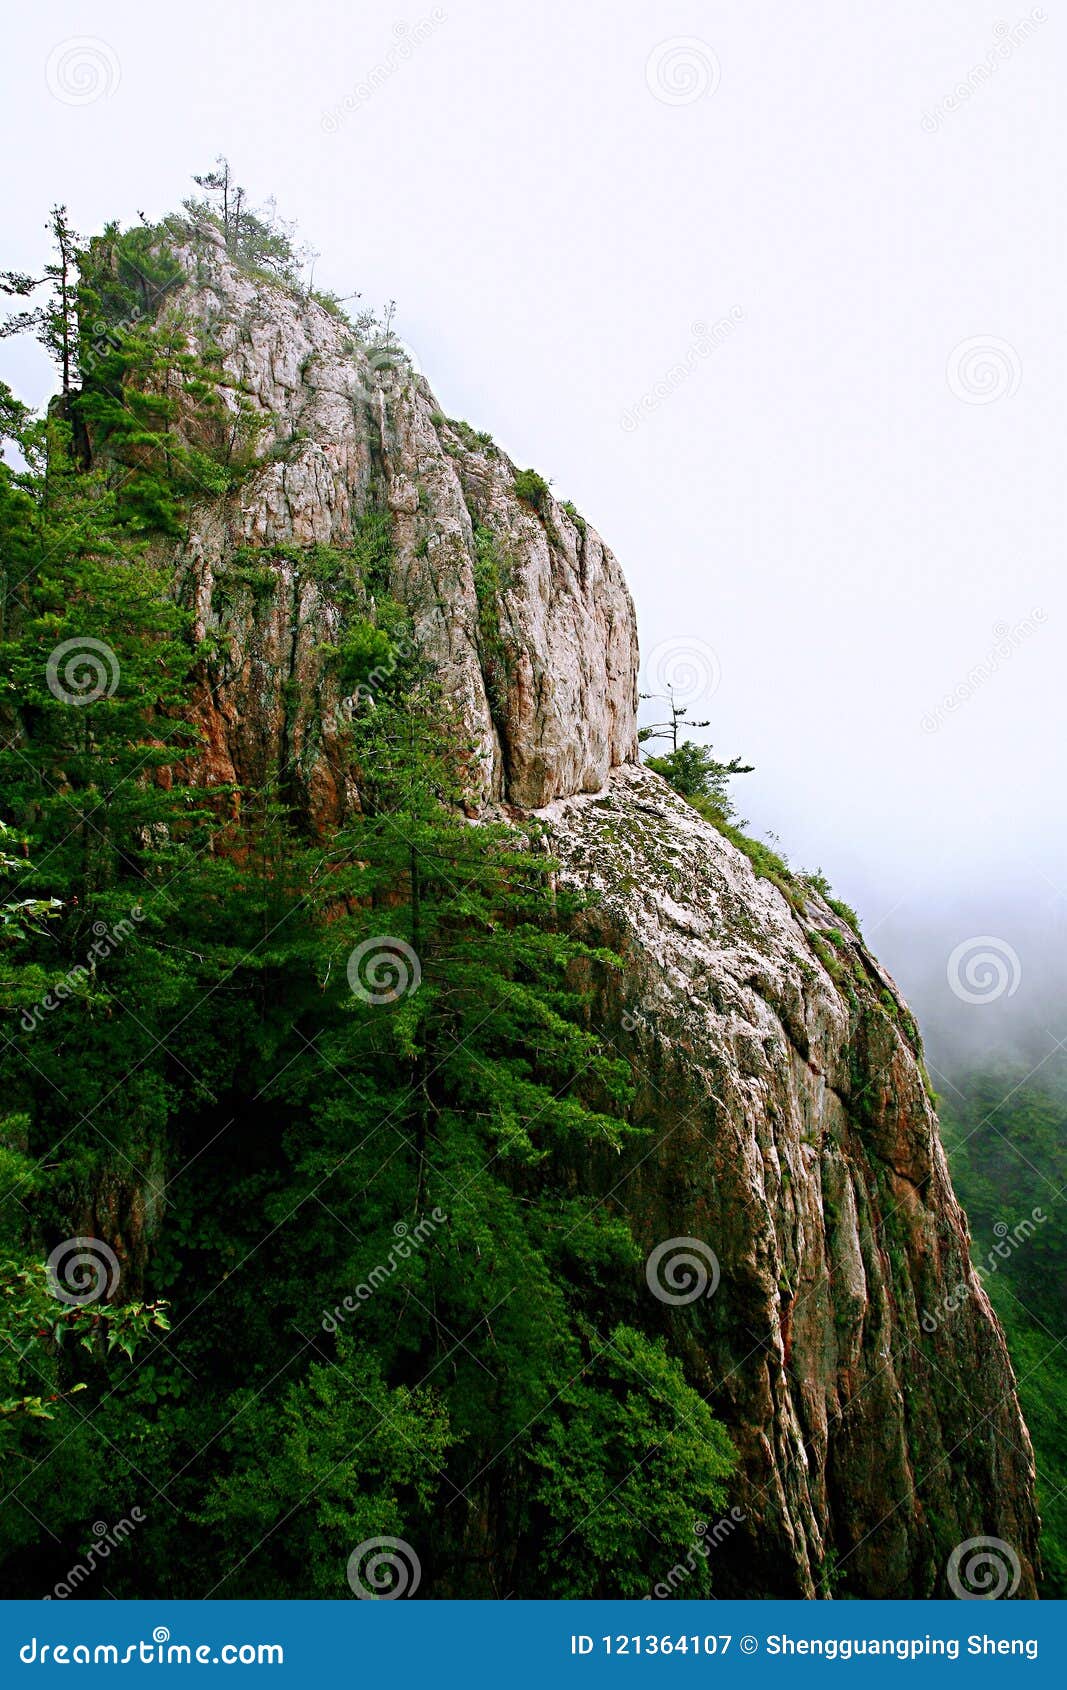 Laojun Mountain in Luoyang stock image. Image of altitude - 121364107